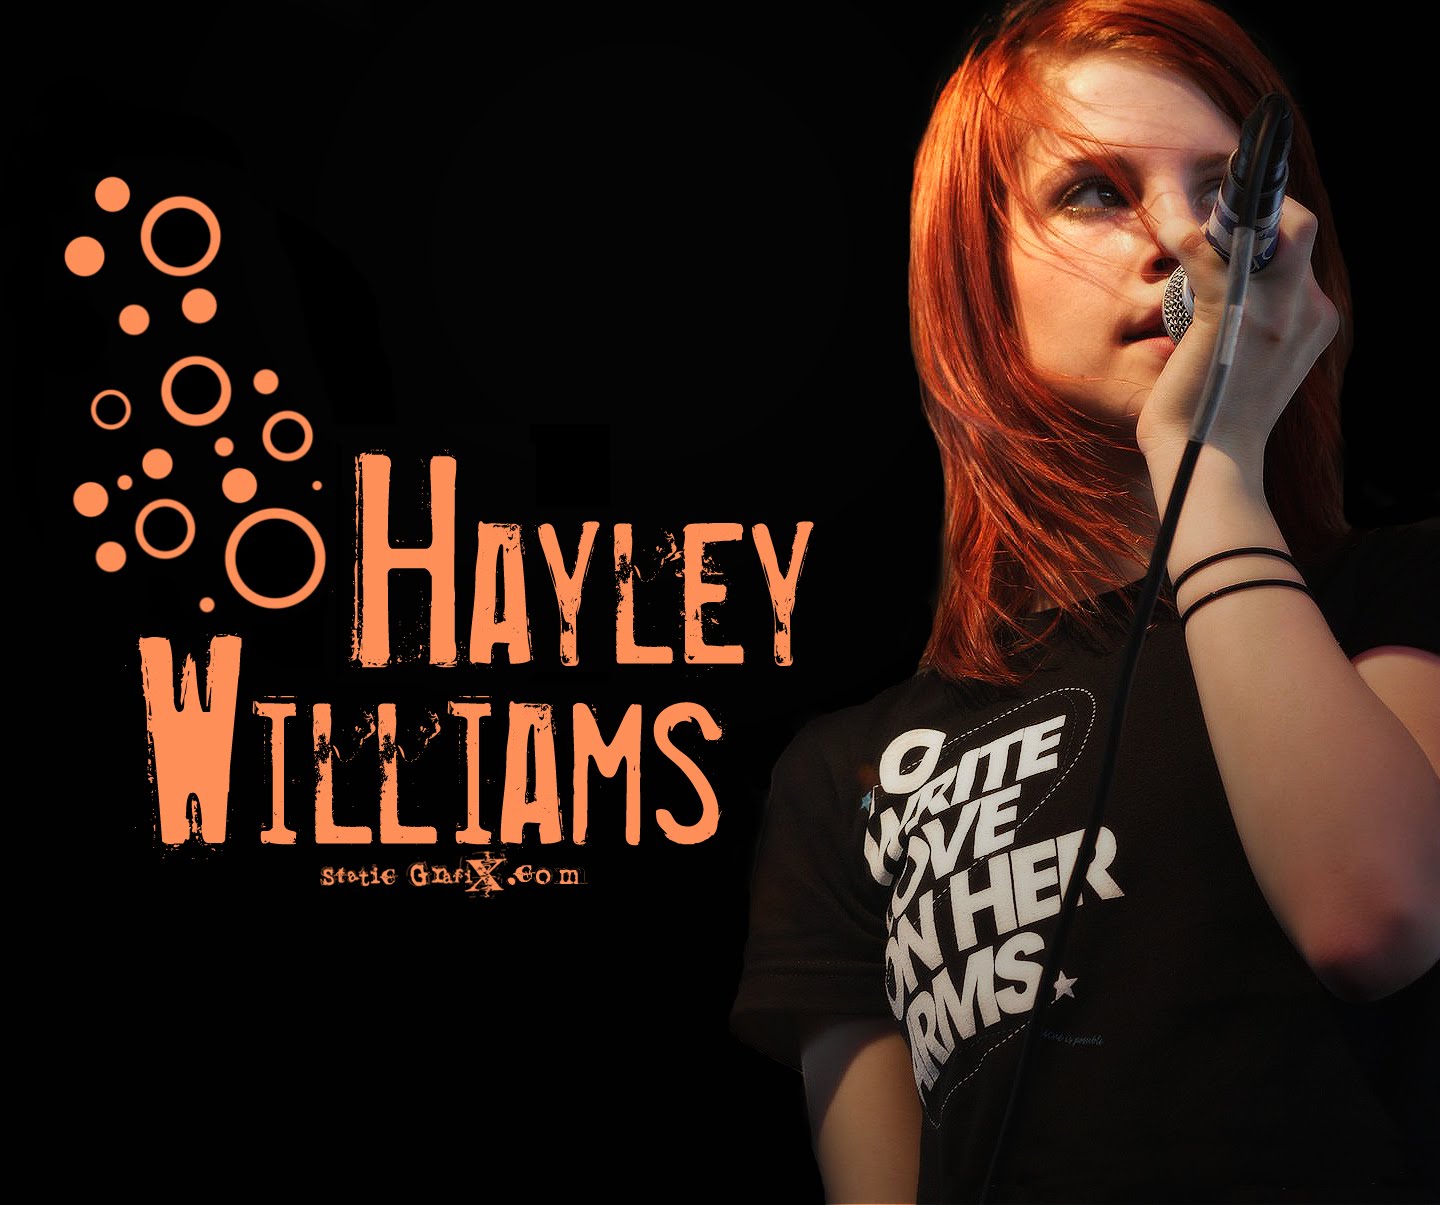 Hayley+williams+hot+wallpaper